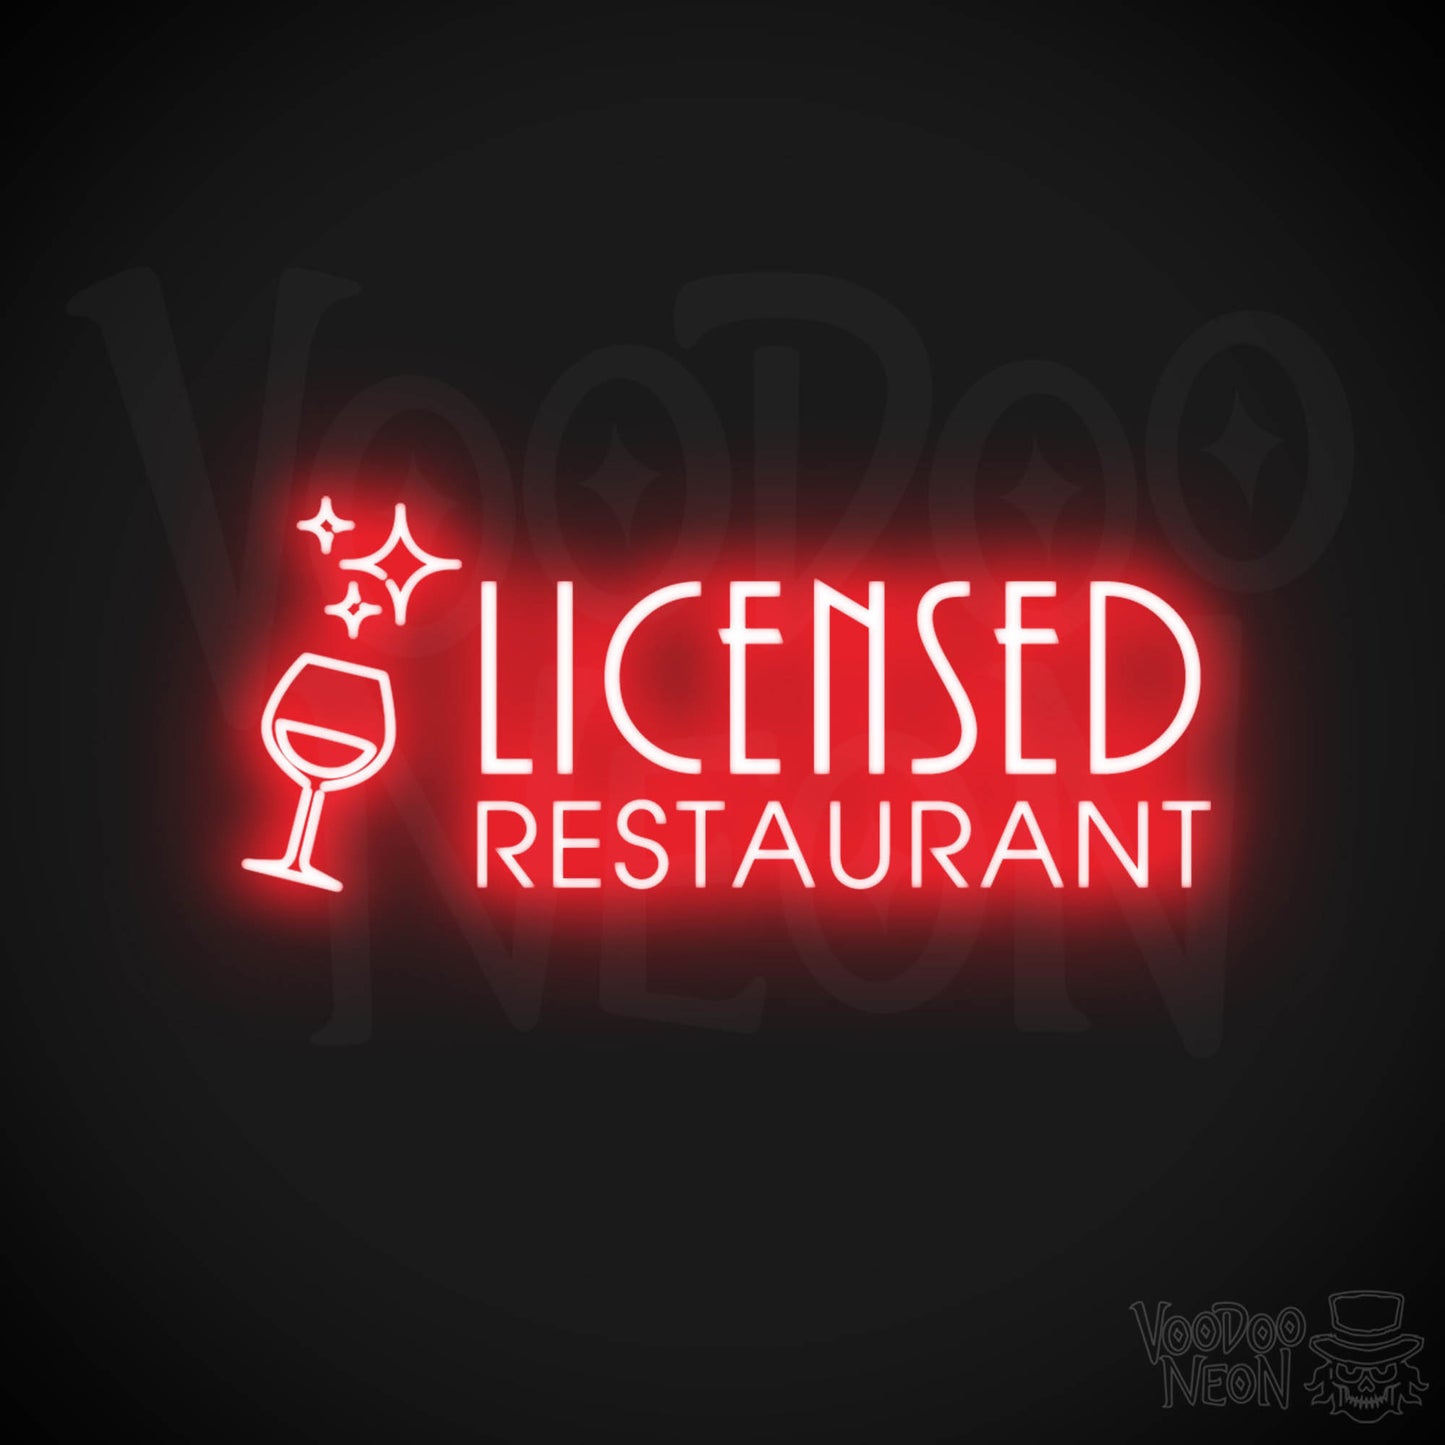 Licensed Restaurant Neon Sign - Licensed Restaurant Sign - Color Red